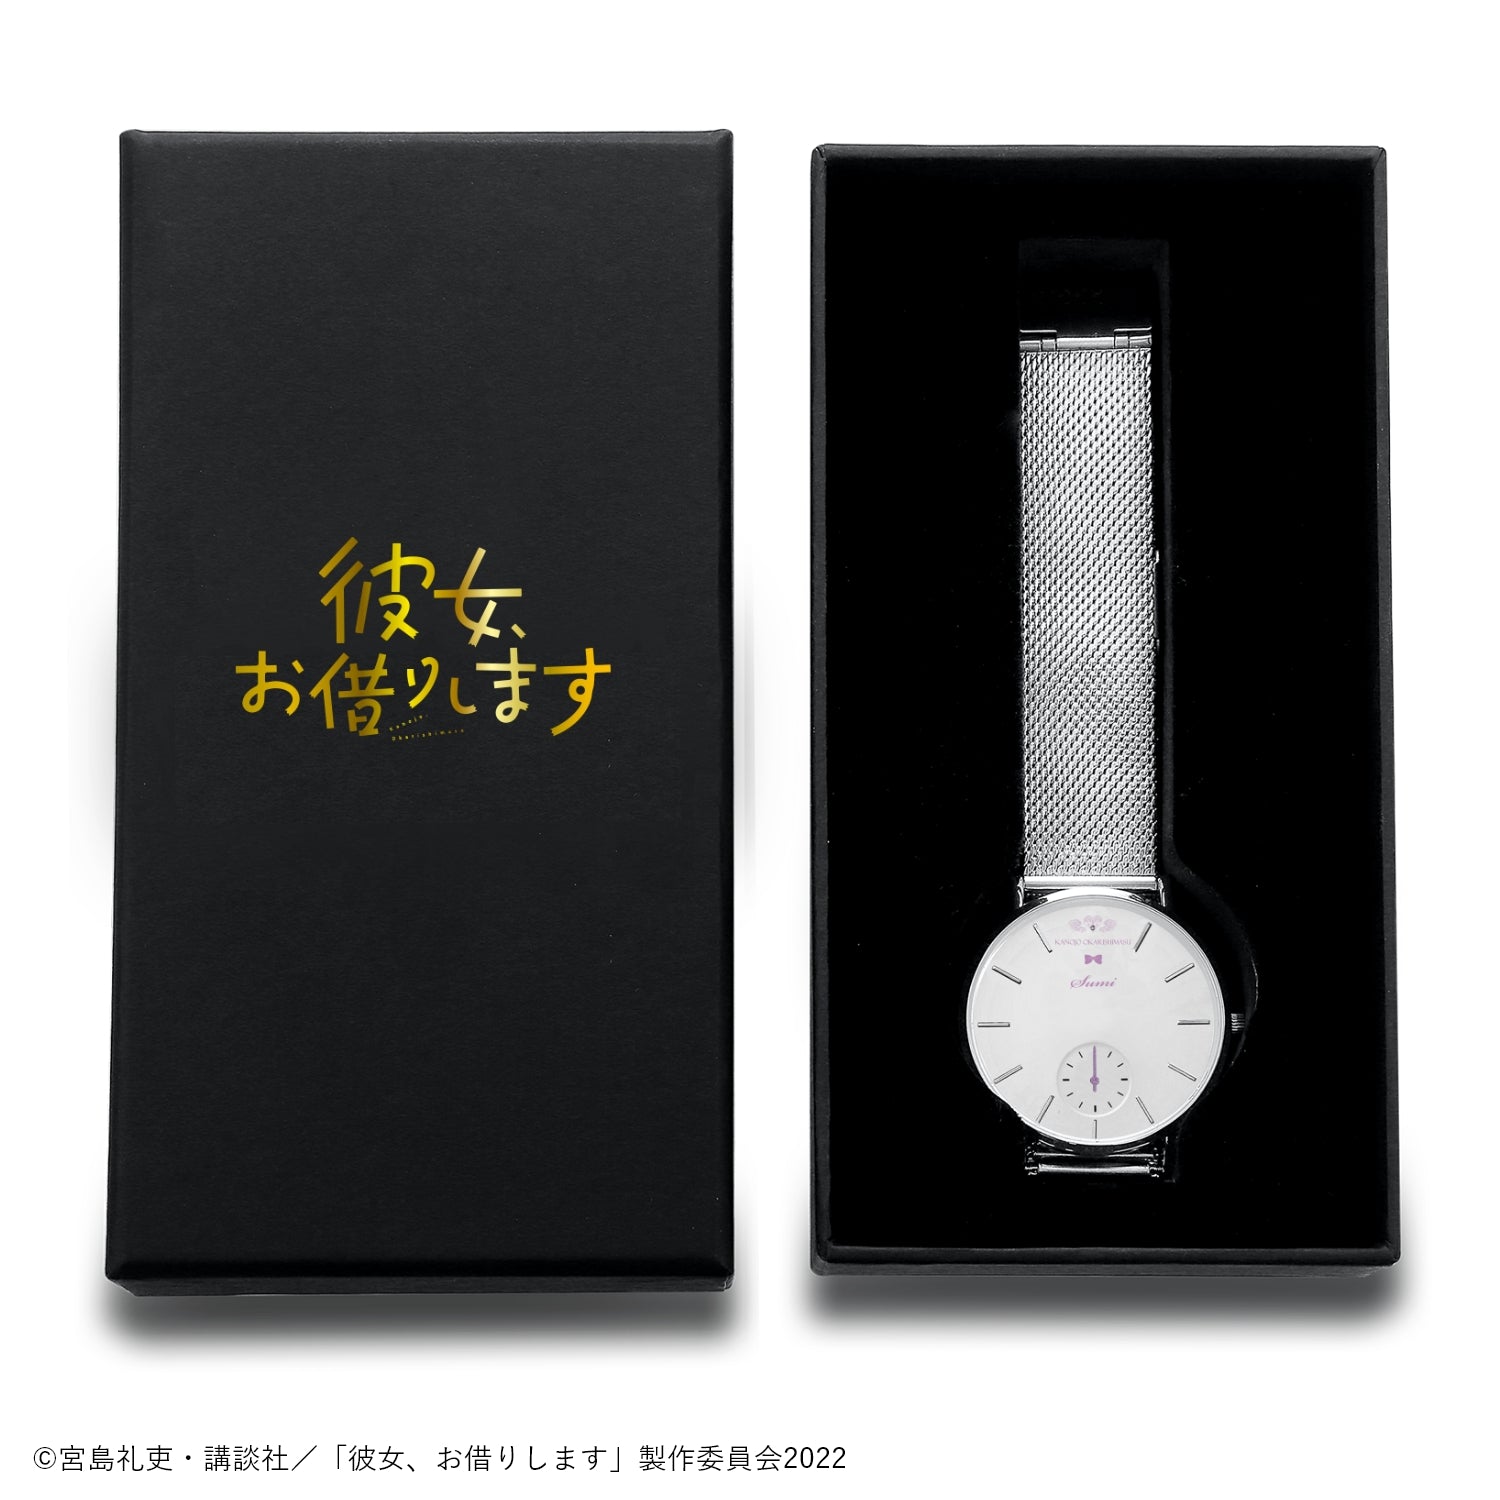 アニメ「彼女、お借りします」薄型スモールセコンド腕時計 | 更科瑠夏 - 公式通販サイト「アニメコレクション/Anime Collection」